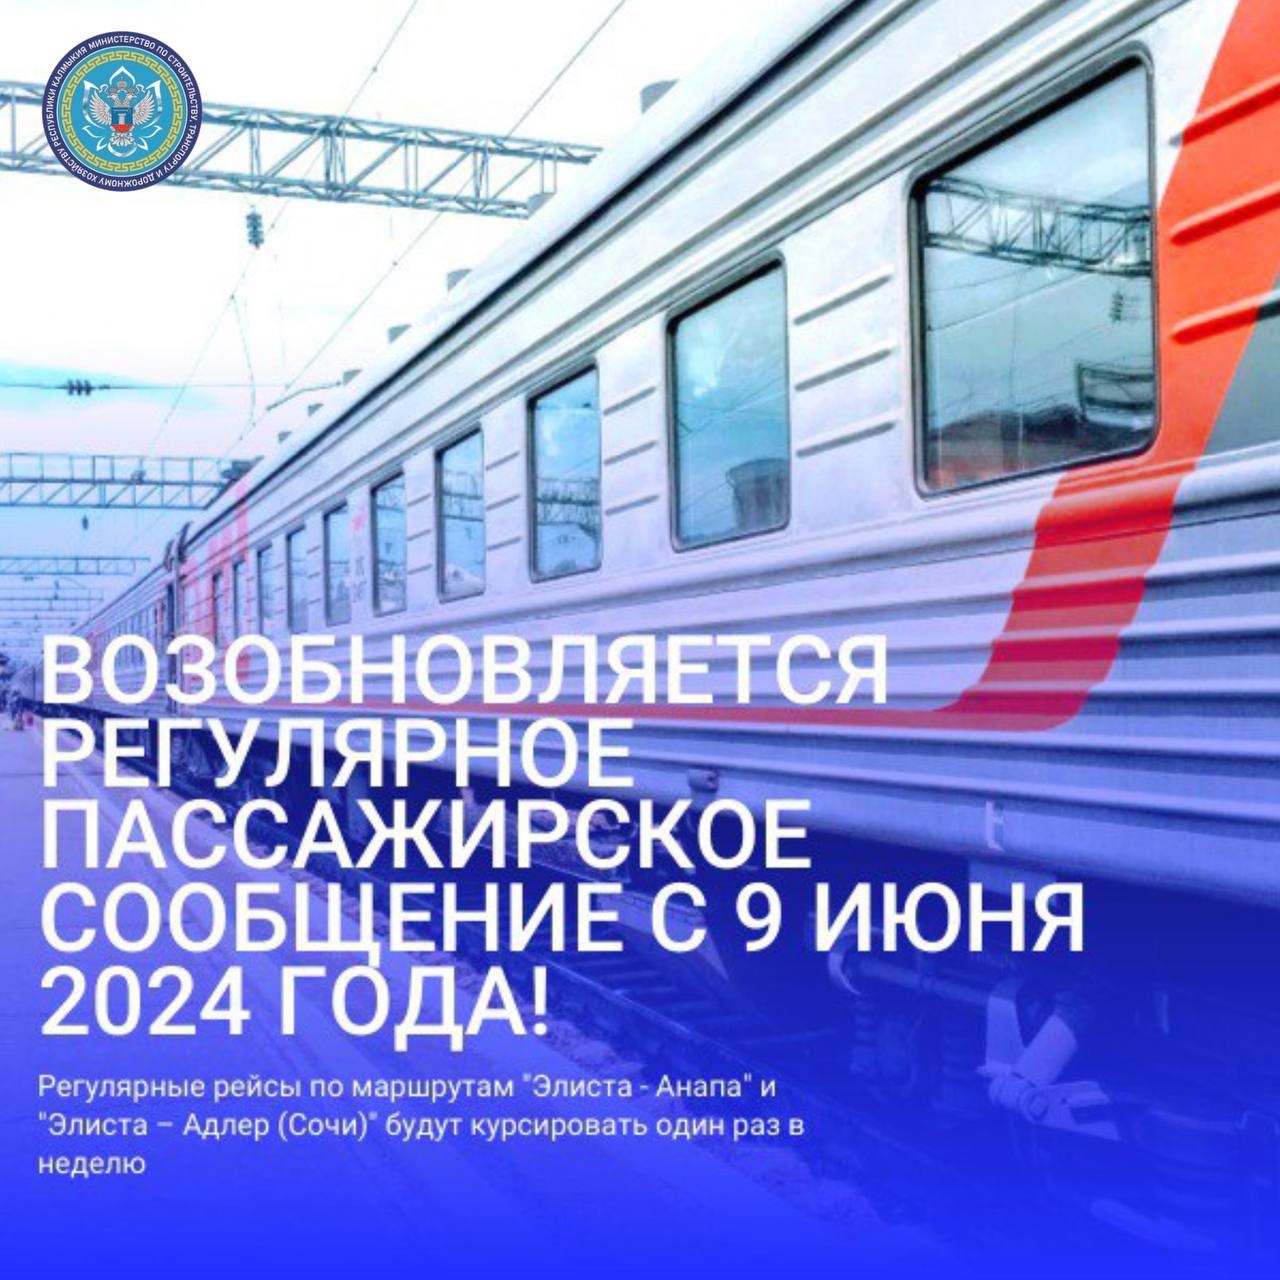 В Калмыкии с 9 июня возобновляется пассажирское сообщение с городами Черноморского побережья России